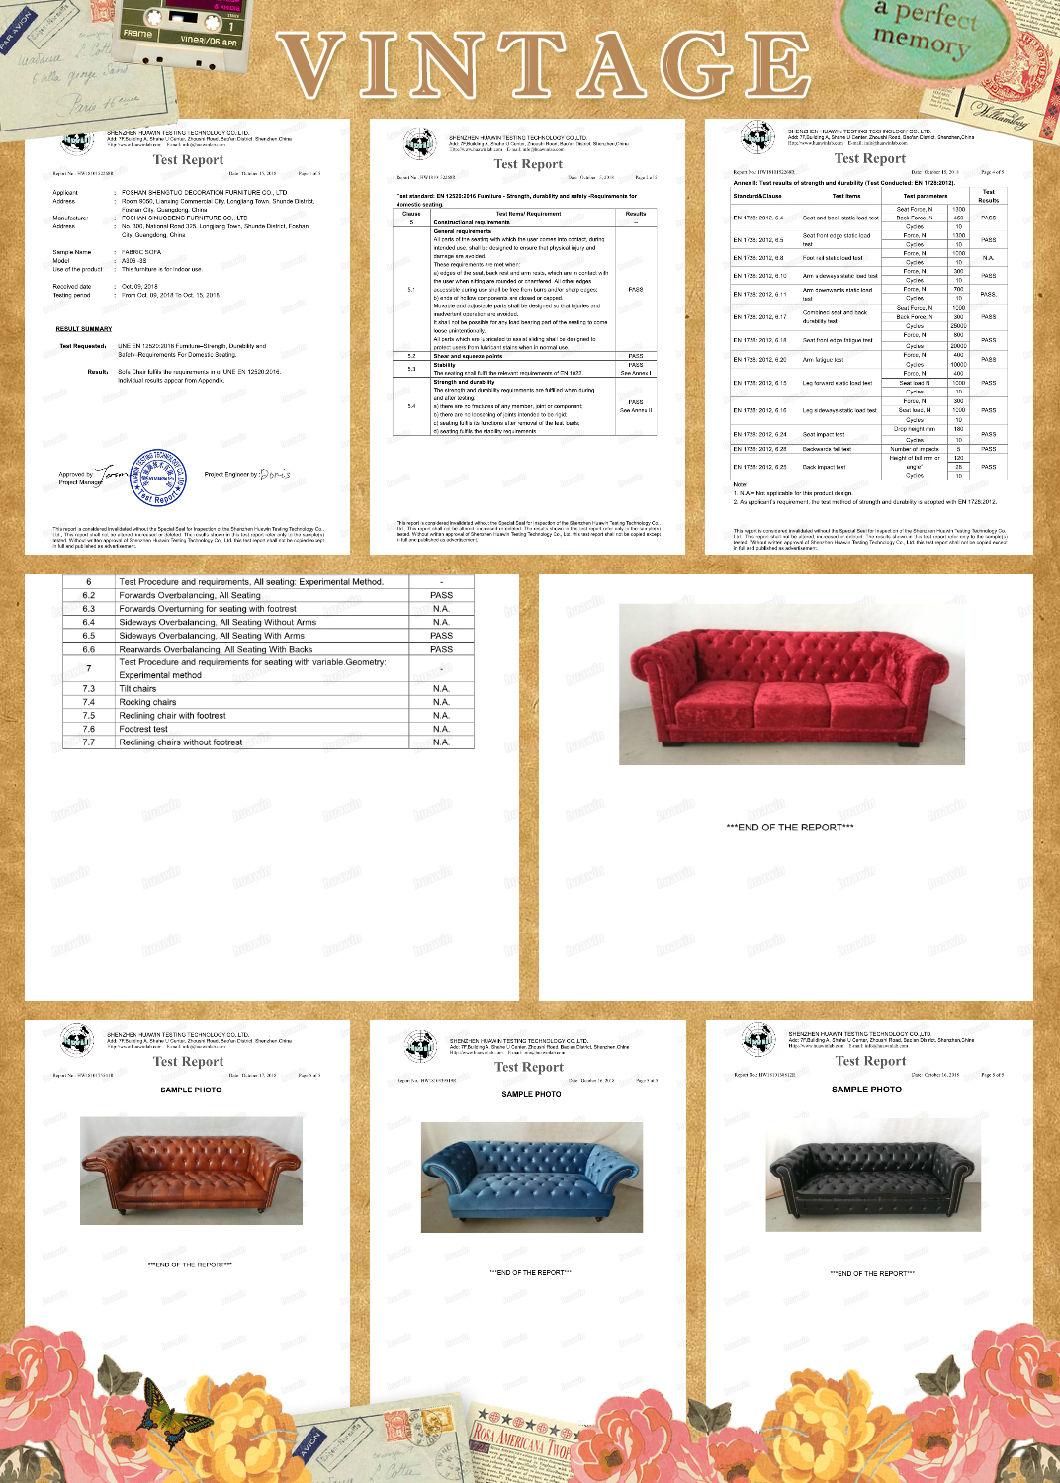 Jacquard Tapestry Sofa Fabric Couth Designs Top Fashion Sofas Dubai Leather Sofa Furniture Classic Sofa